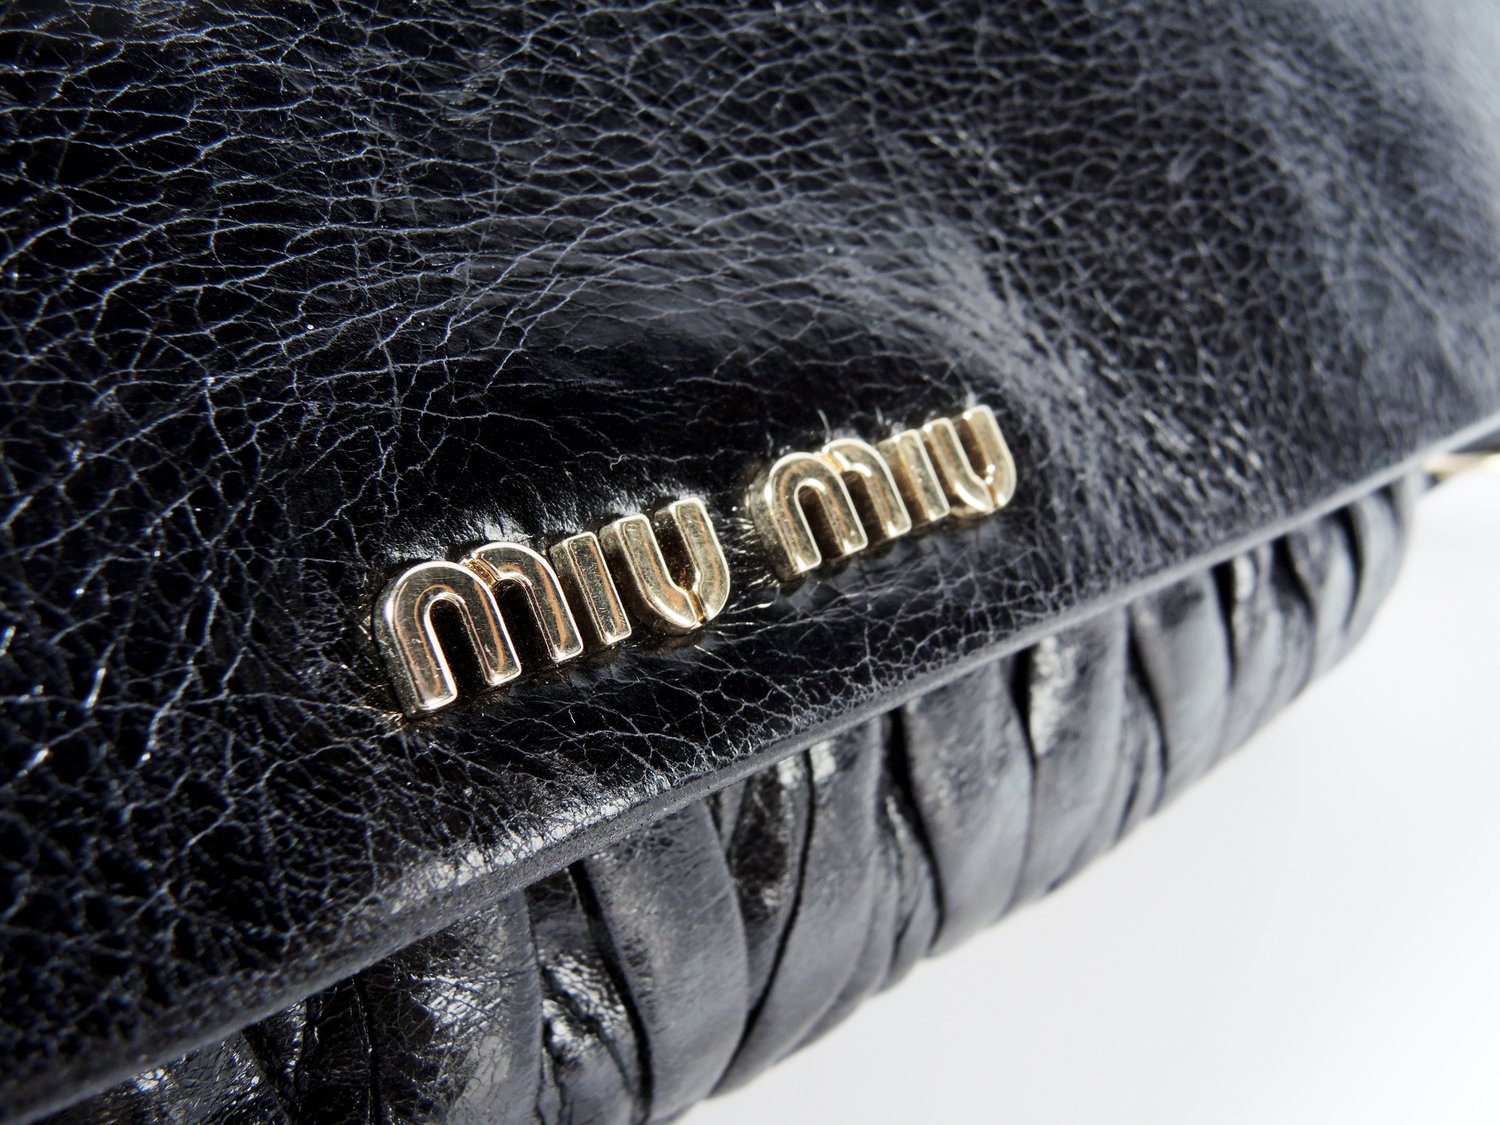 MIU MIU Black Flap Shoulder Bag — Seams to Fit Women's Consignment